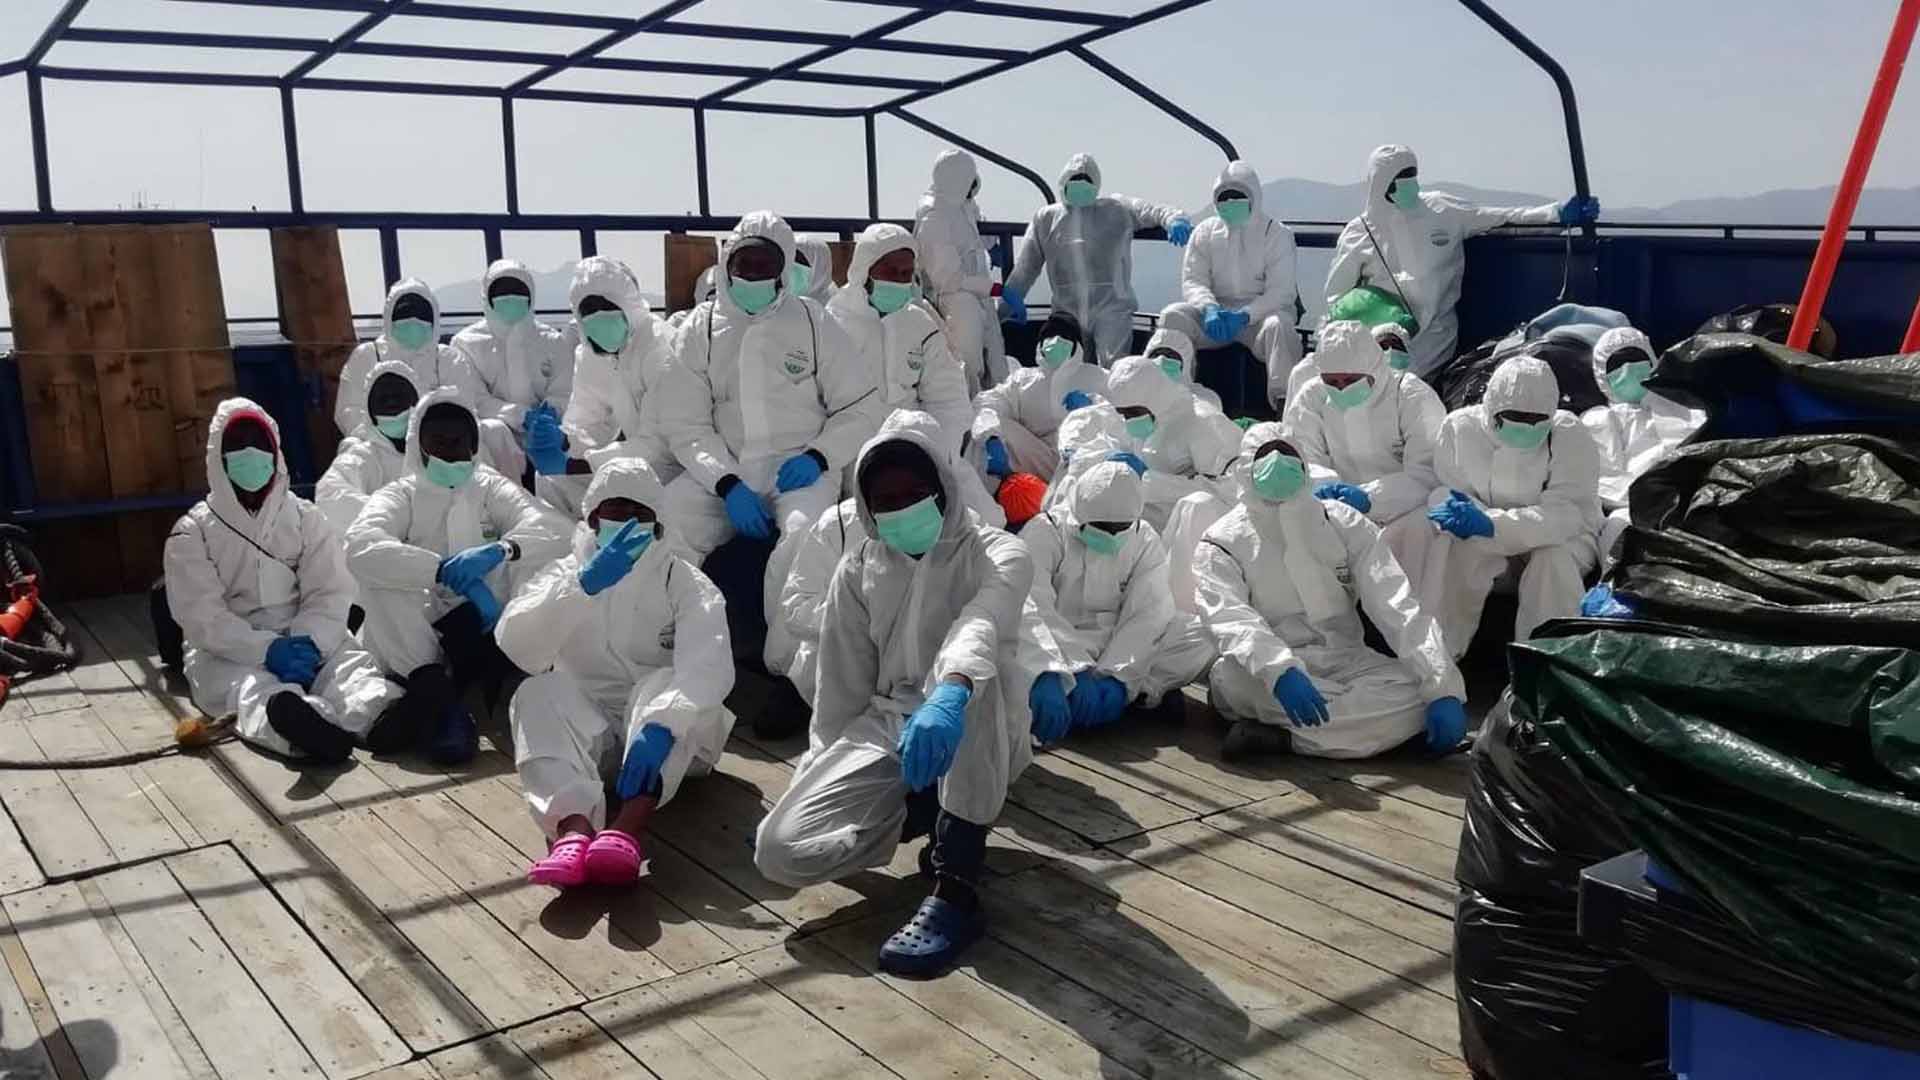 Italia pone en cuarentena en un ferri a los 34 migrantes del barco Aita Mari